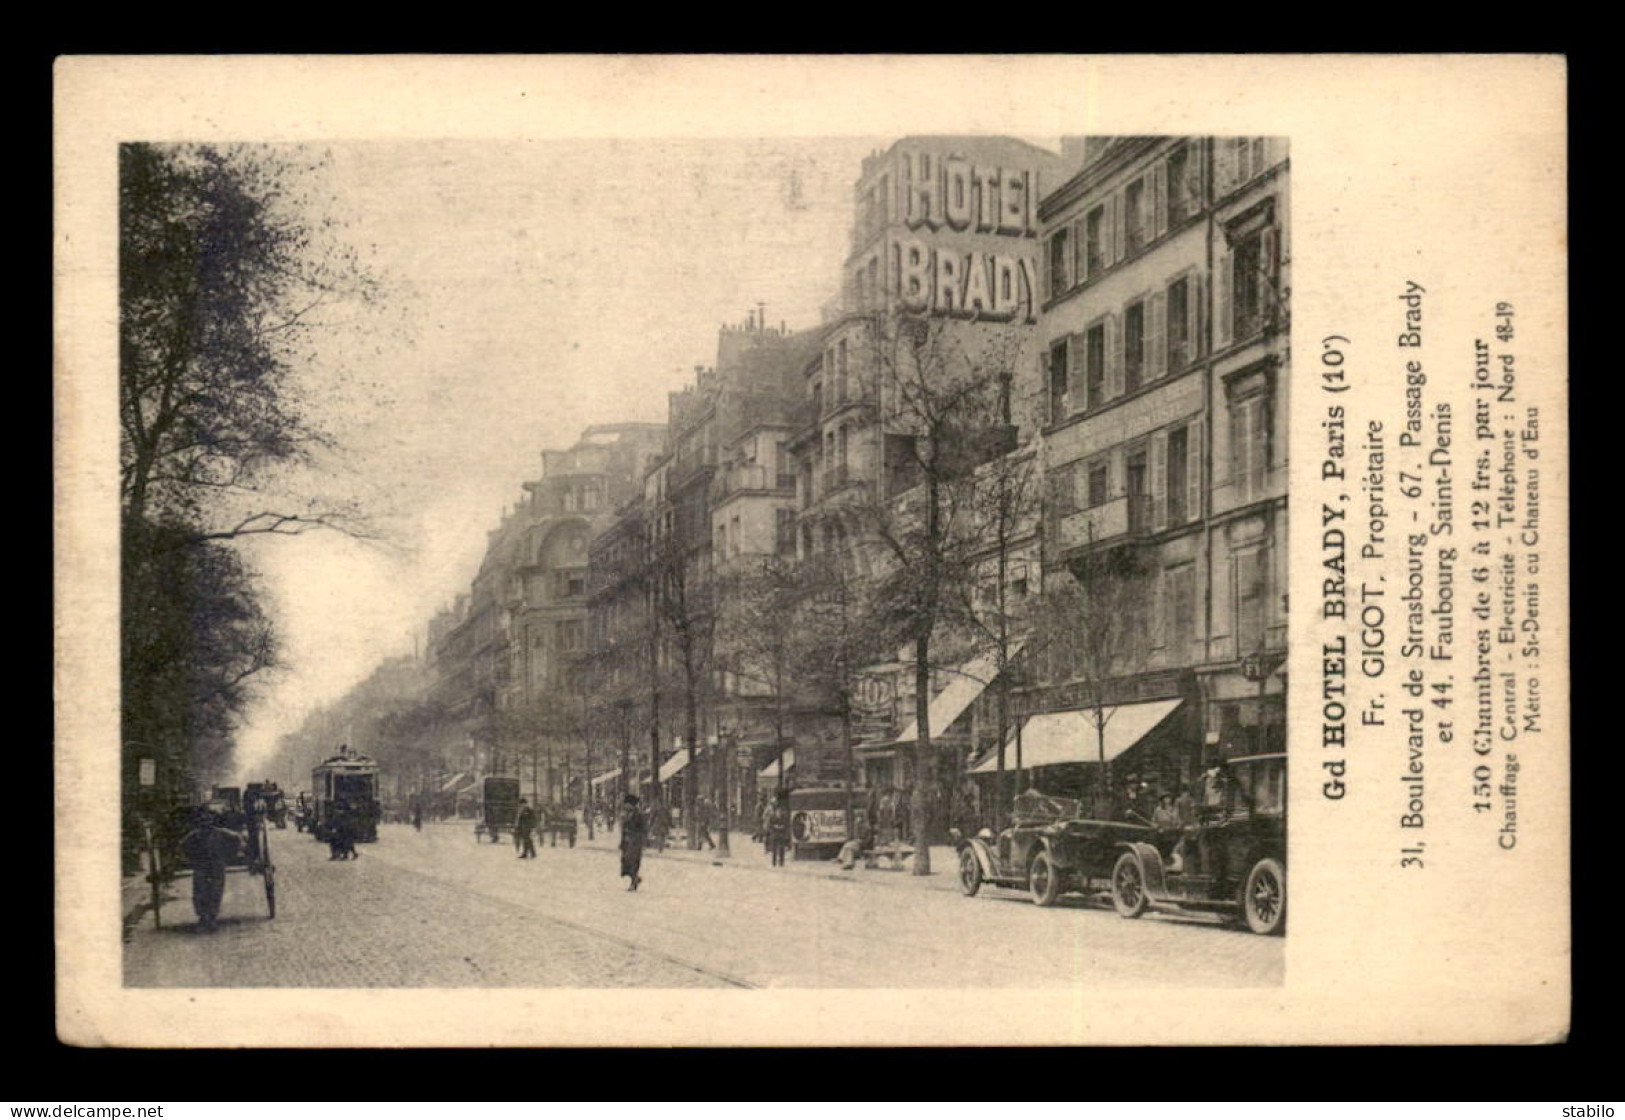 75 - PARIS 10EME - GRAND HOTEL BRADY, PROPRIETAIRE F. GIGOT, 31 BOULEVARD DE STRASBOURG - Paris (10)